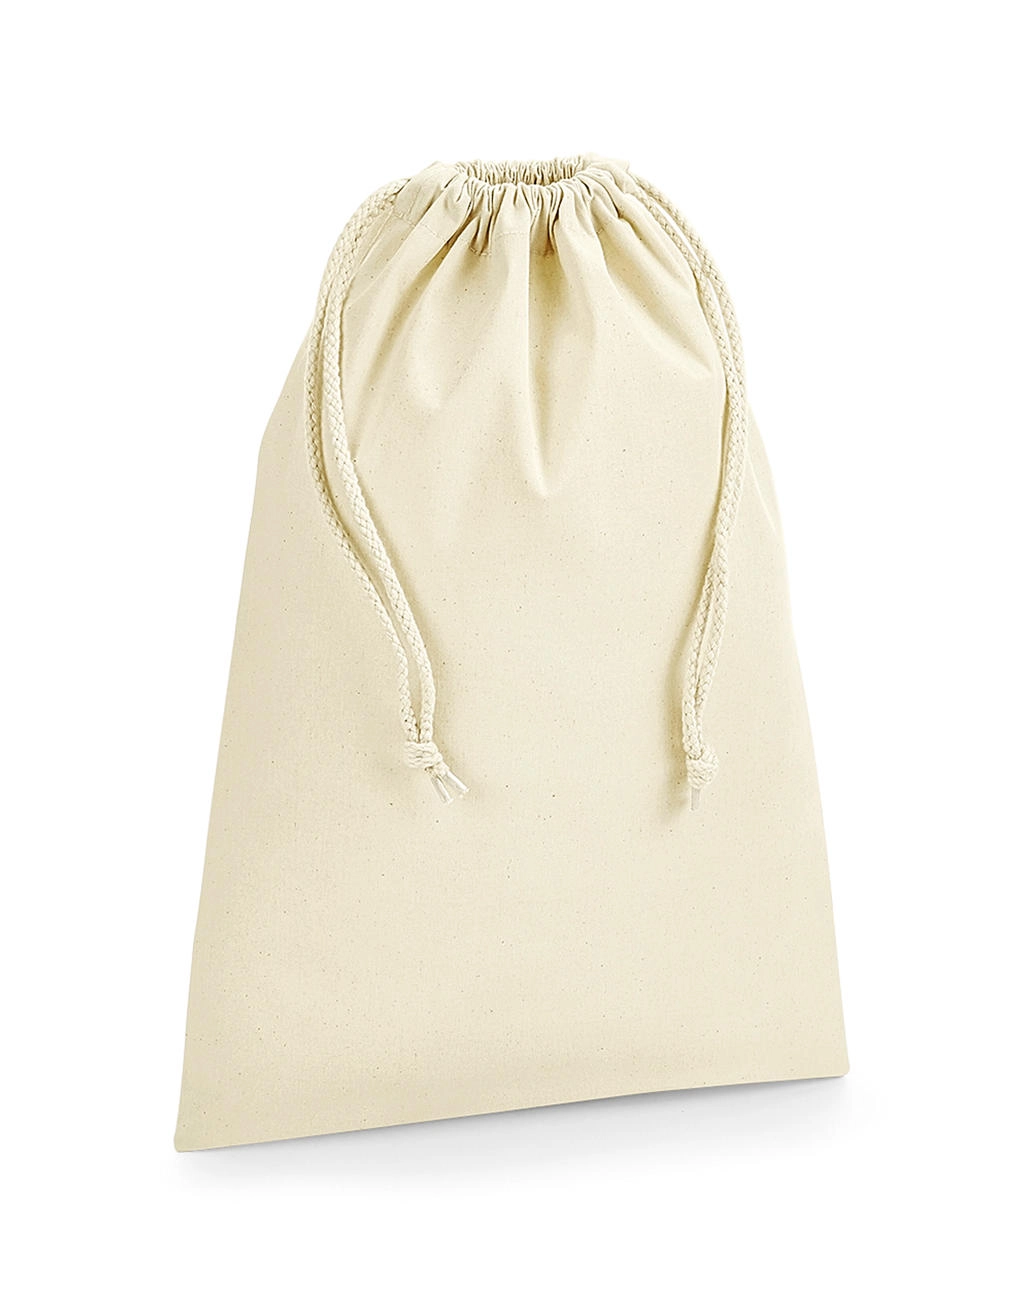 Organic Premium Cotton Stuff Bag zum Besticken und Bedrucken in der Farbe Natural mit Ihren Logo, Schriftzug oder Motiv.